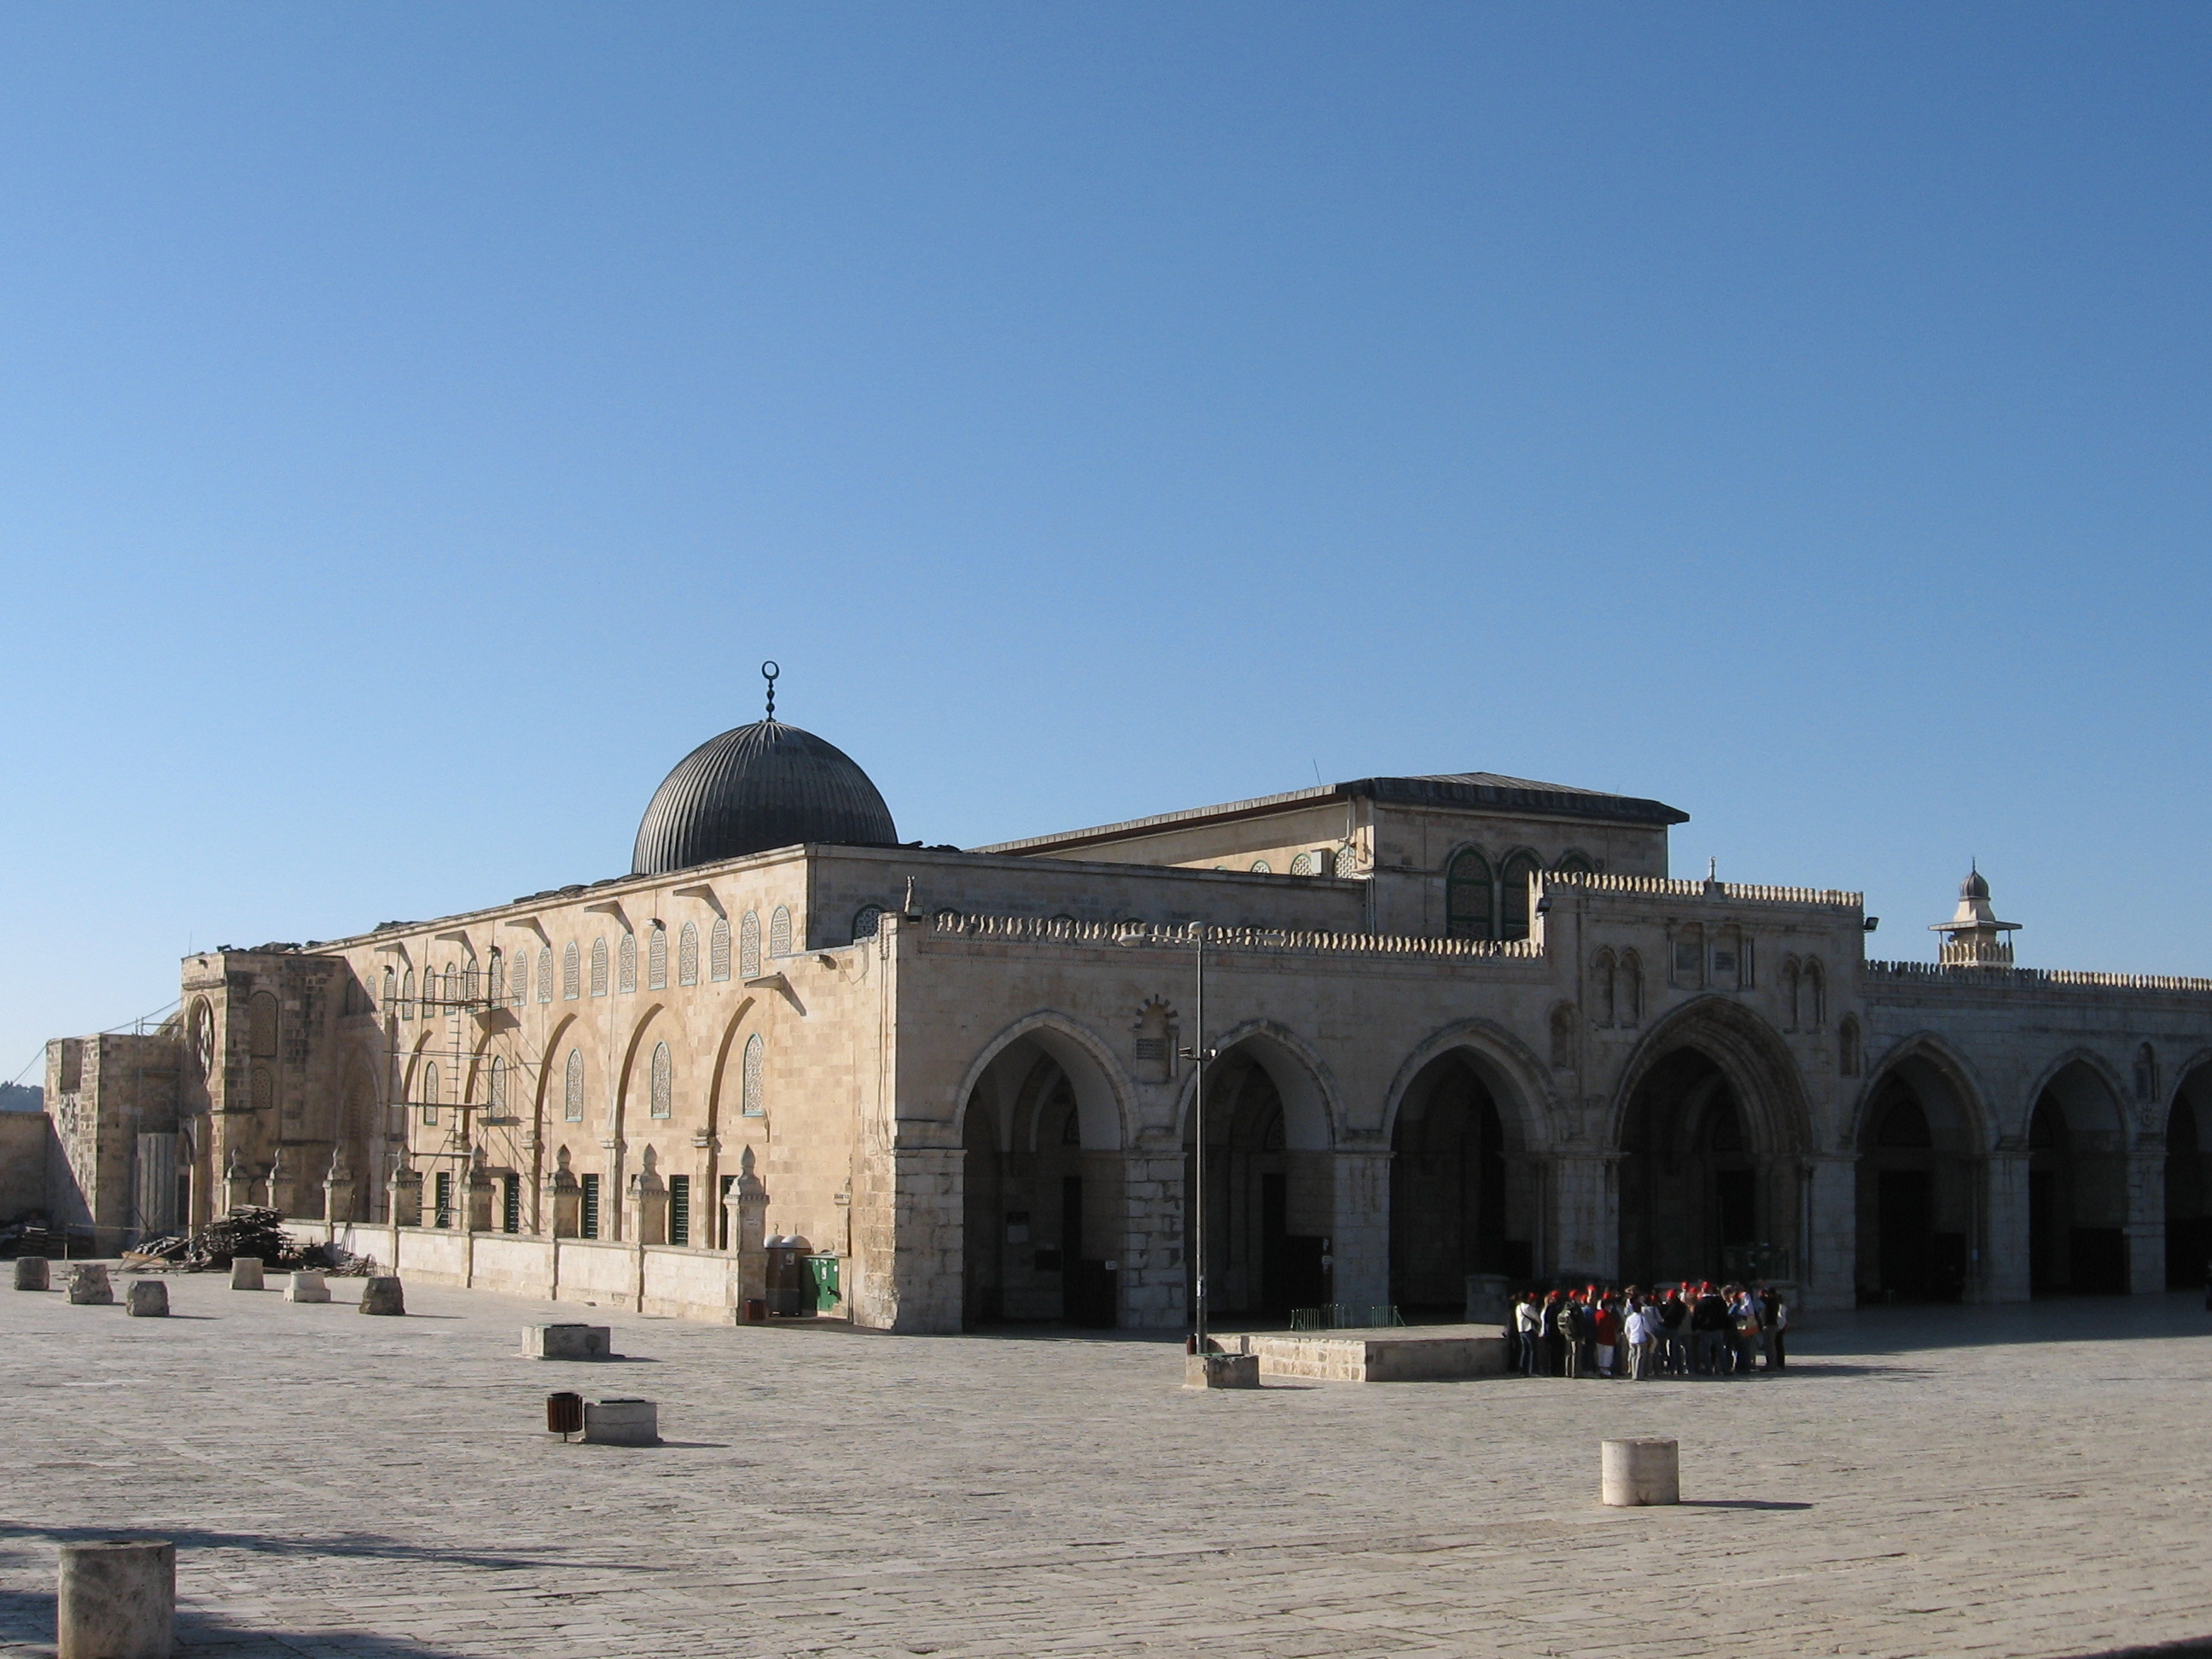 مجلس أوقاف القدس يقول بأن تغيير الوضع القائم في الأقصى انتهاك صارخ  لحقوق المسلمين.